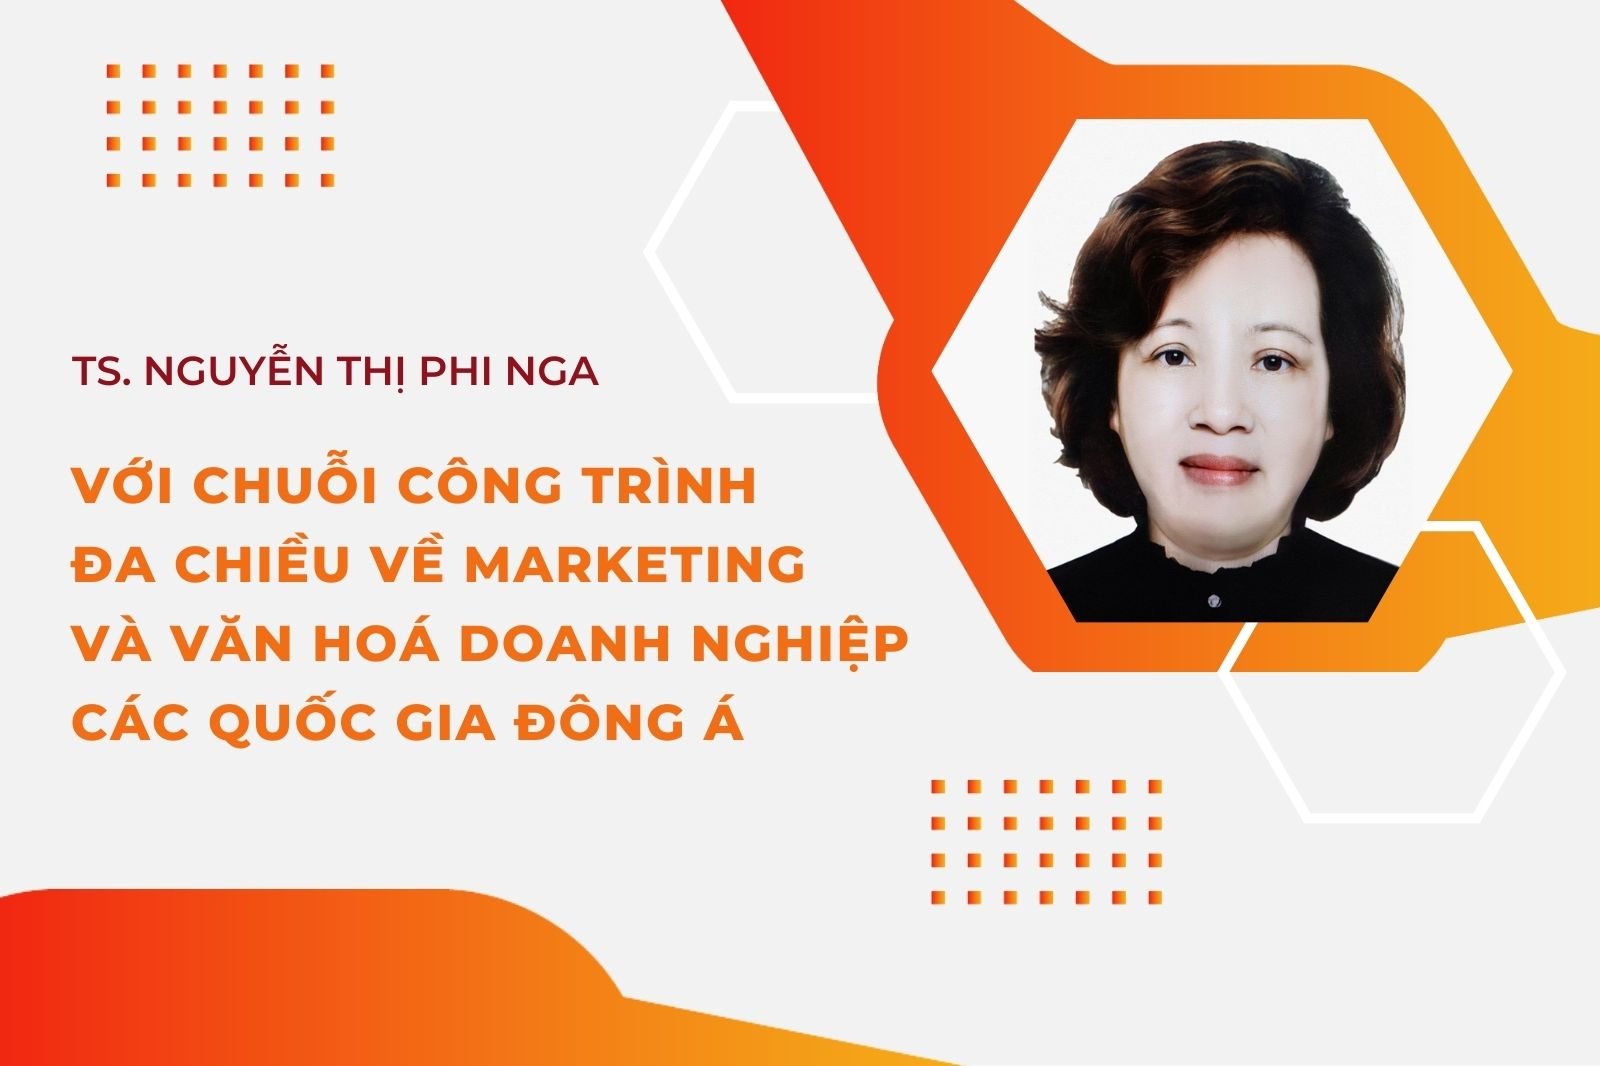 TS. Nguyễn Thị Phi Nga với chuỗi công trình đa chiều về marketing và văn hóa doanh nghiệp các quốc gia Đông Á